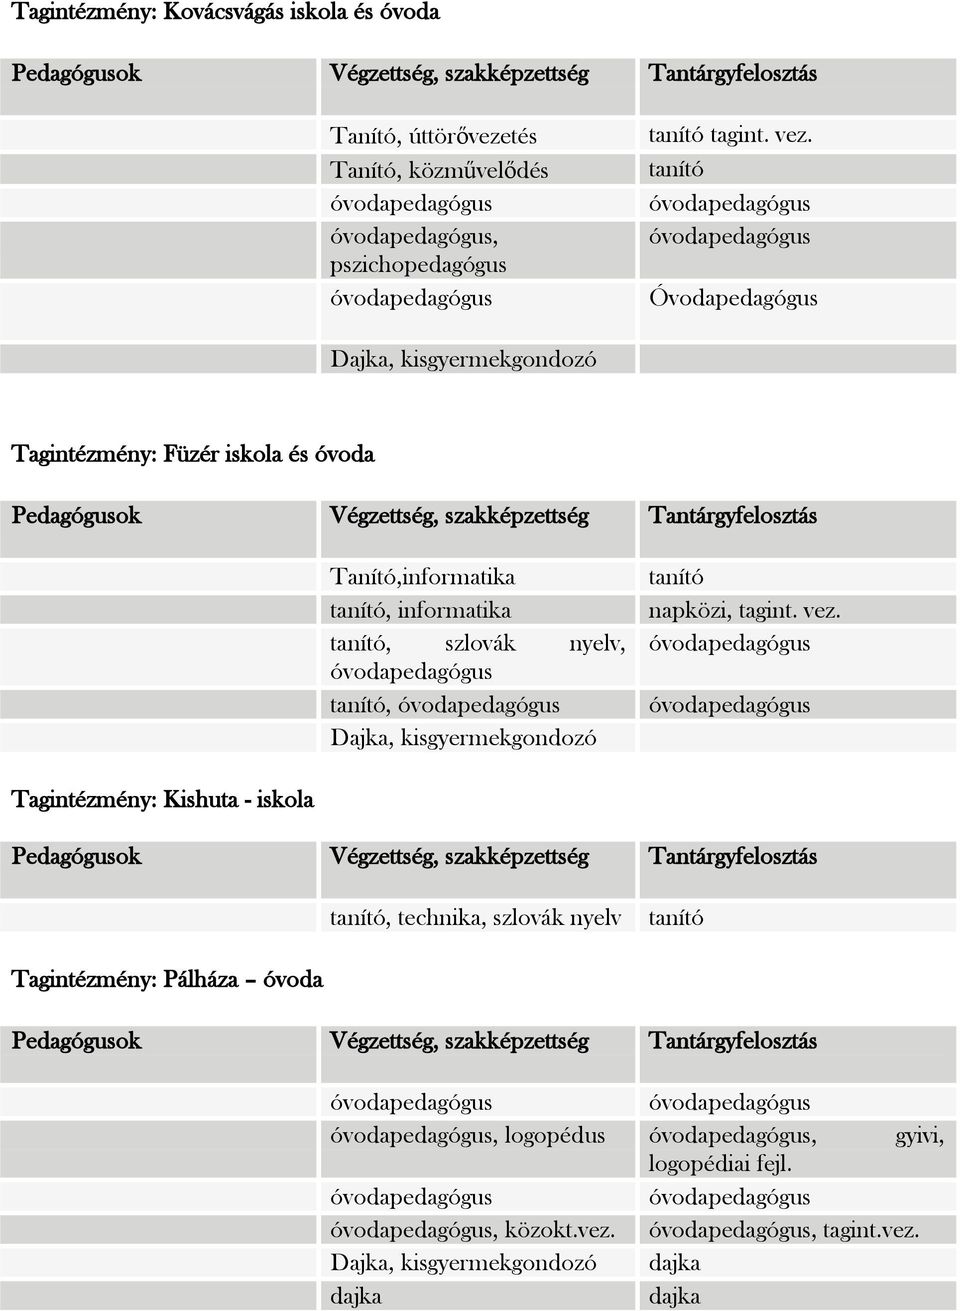 szlovák nyelv, tanító, Dajka, kisgyermekgondozó tanító napközi, tagint. vez.